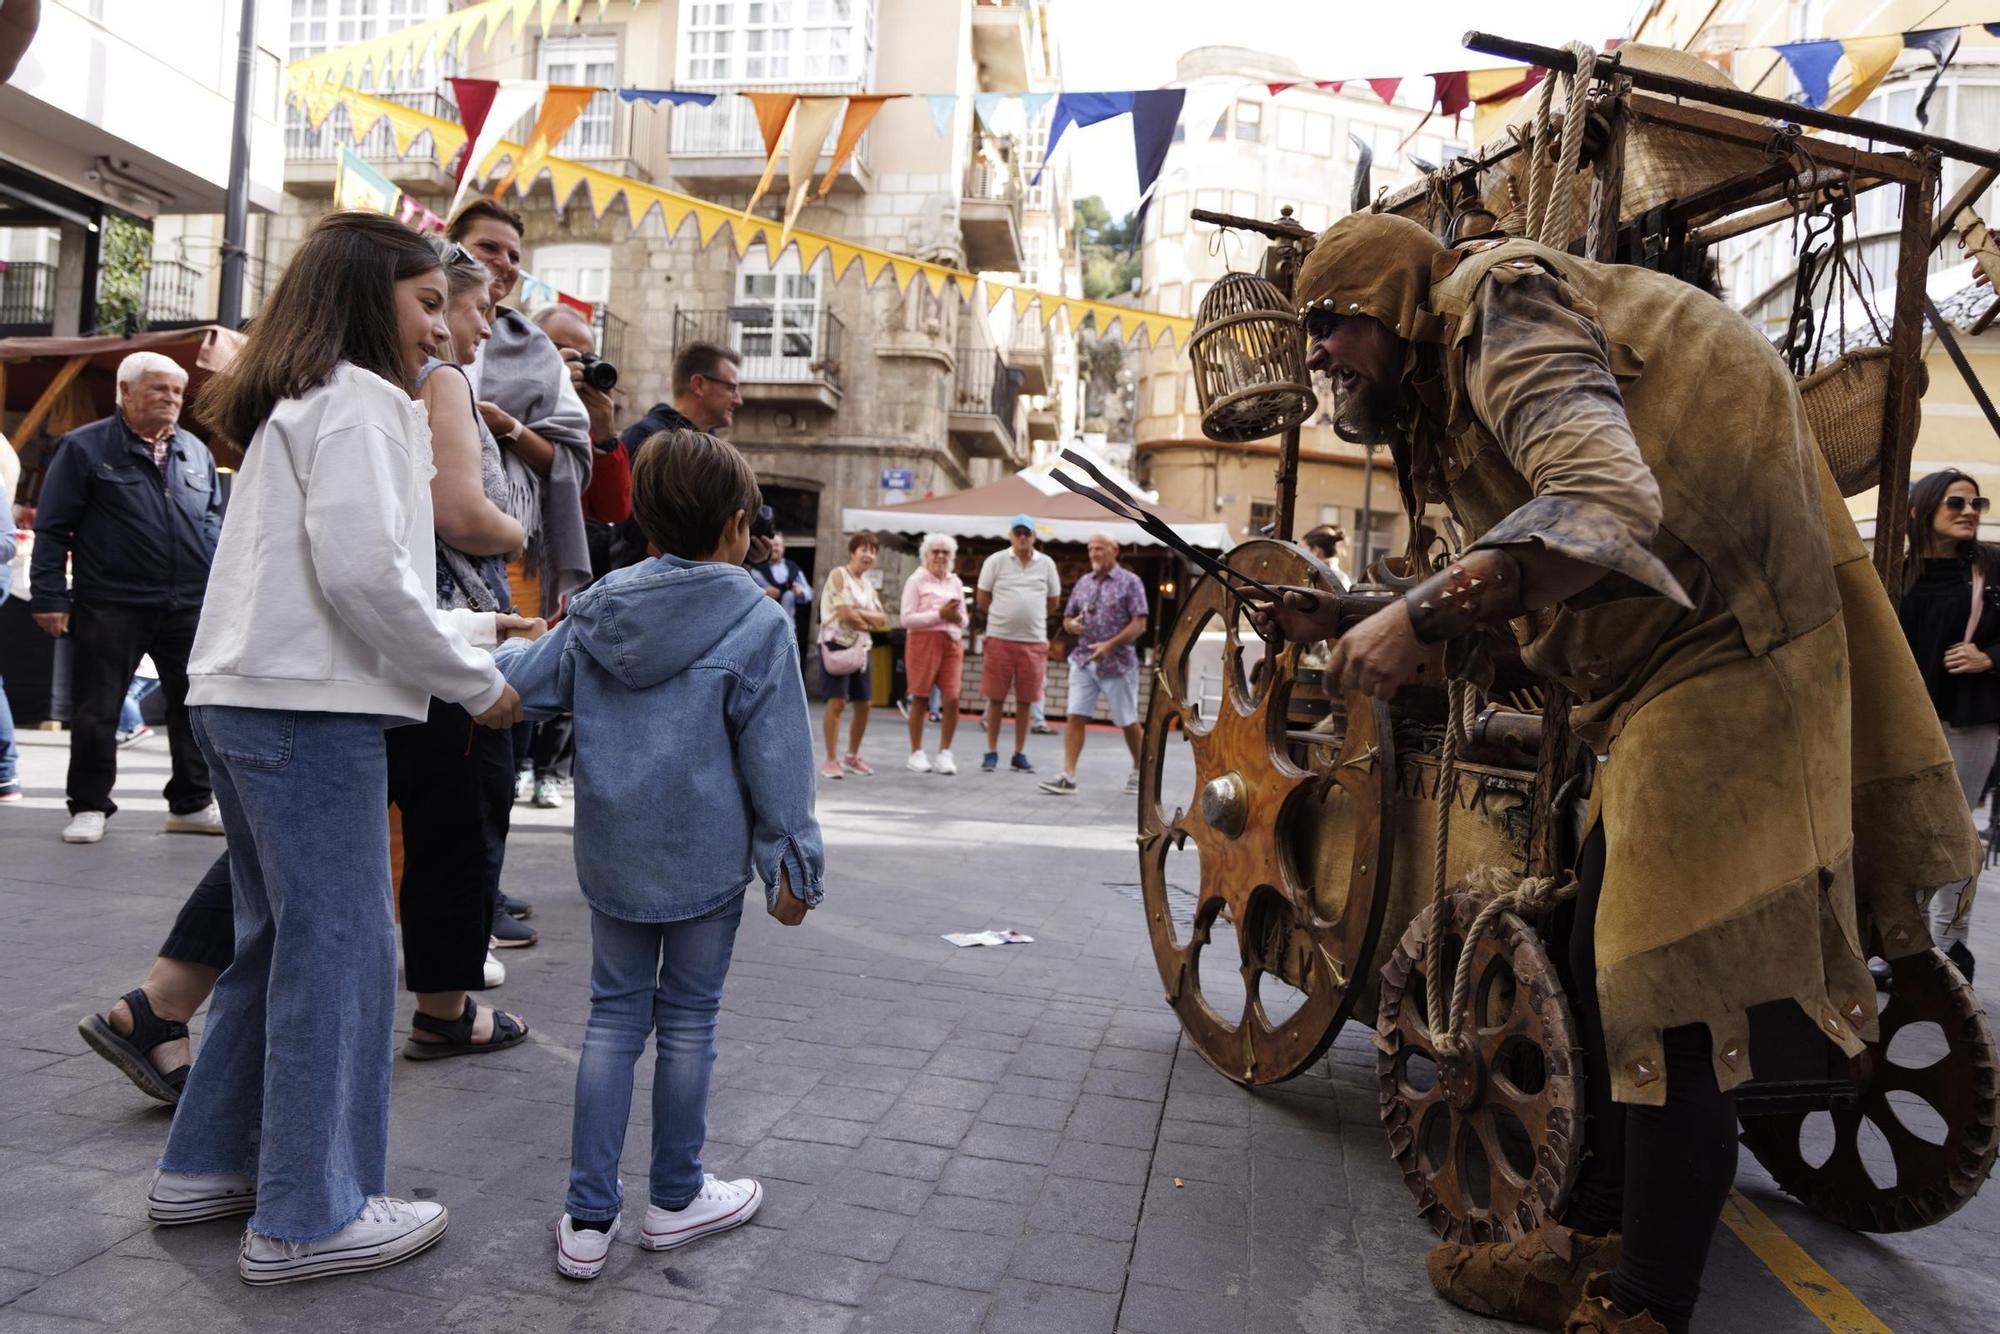 El mercado medieval de Cartagena en imágenes